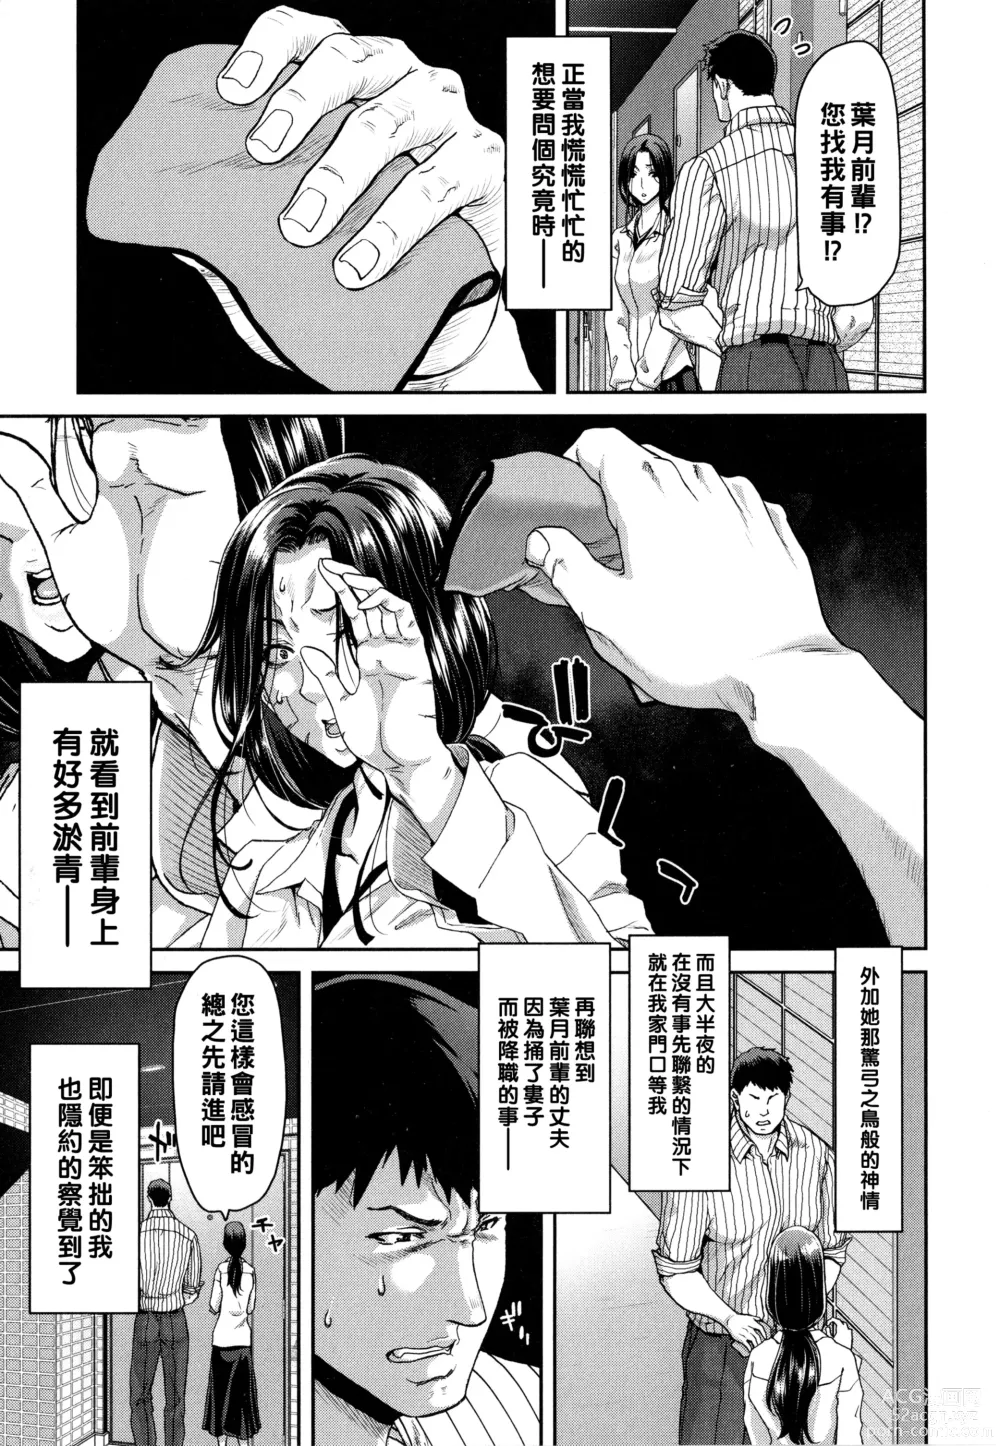 Page 9 of manga Iede Onna o Hirottara - When I picked up a runaway girl. + Melonbooks Gentei Tokuten   Otona no Iede Gojitsudan Sono Ato no Arisa to Akira